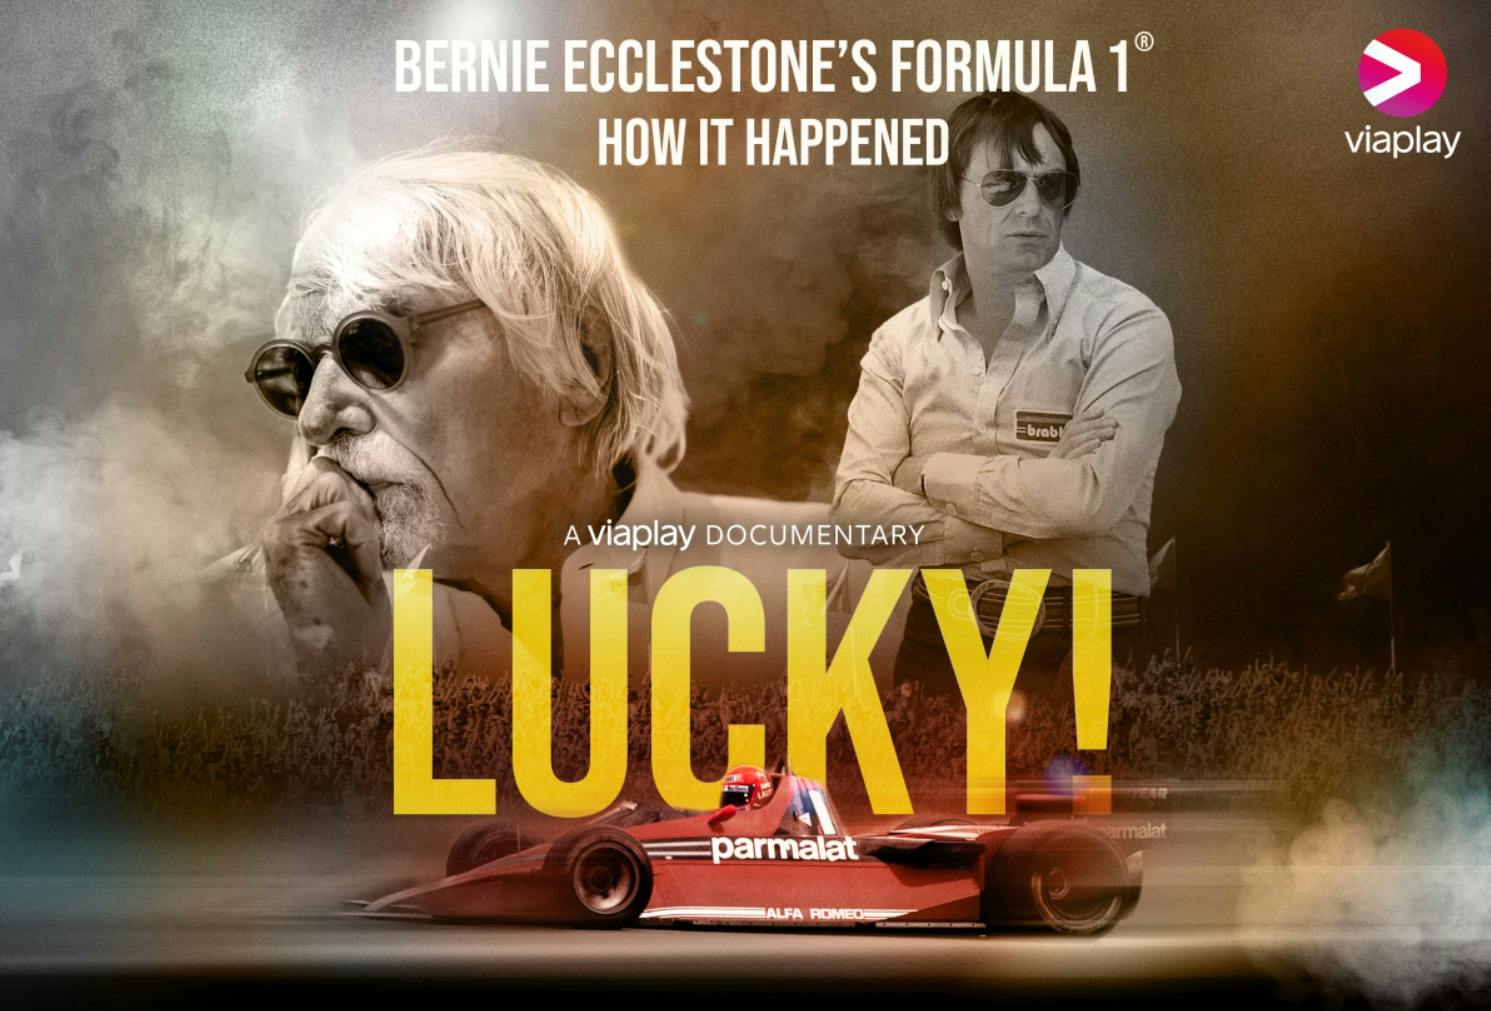 Bernie opowie Ci o F1. Serial „Lucky!” na Viaplay to pozycja obowiązkowa